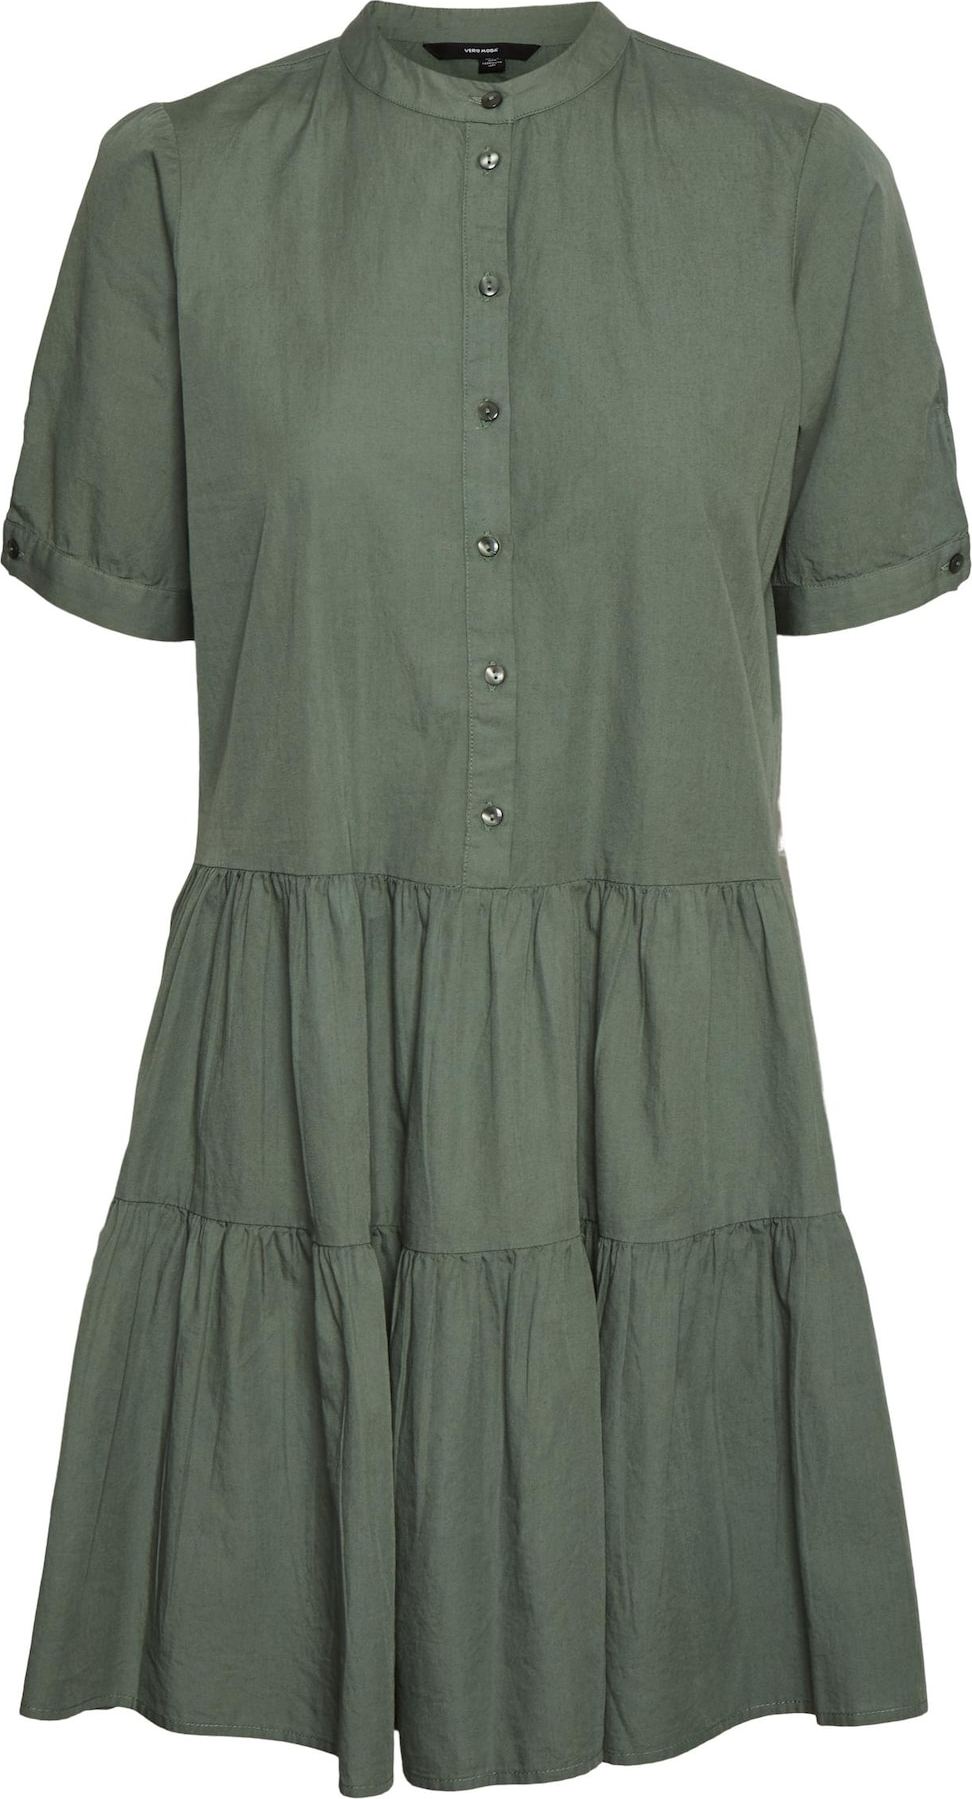 Vero Moda Petite Košilové šaty zelená